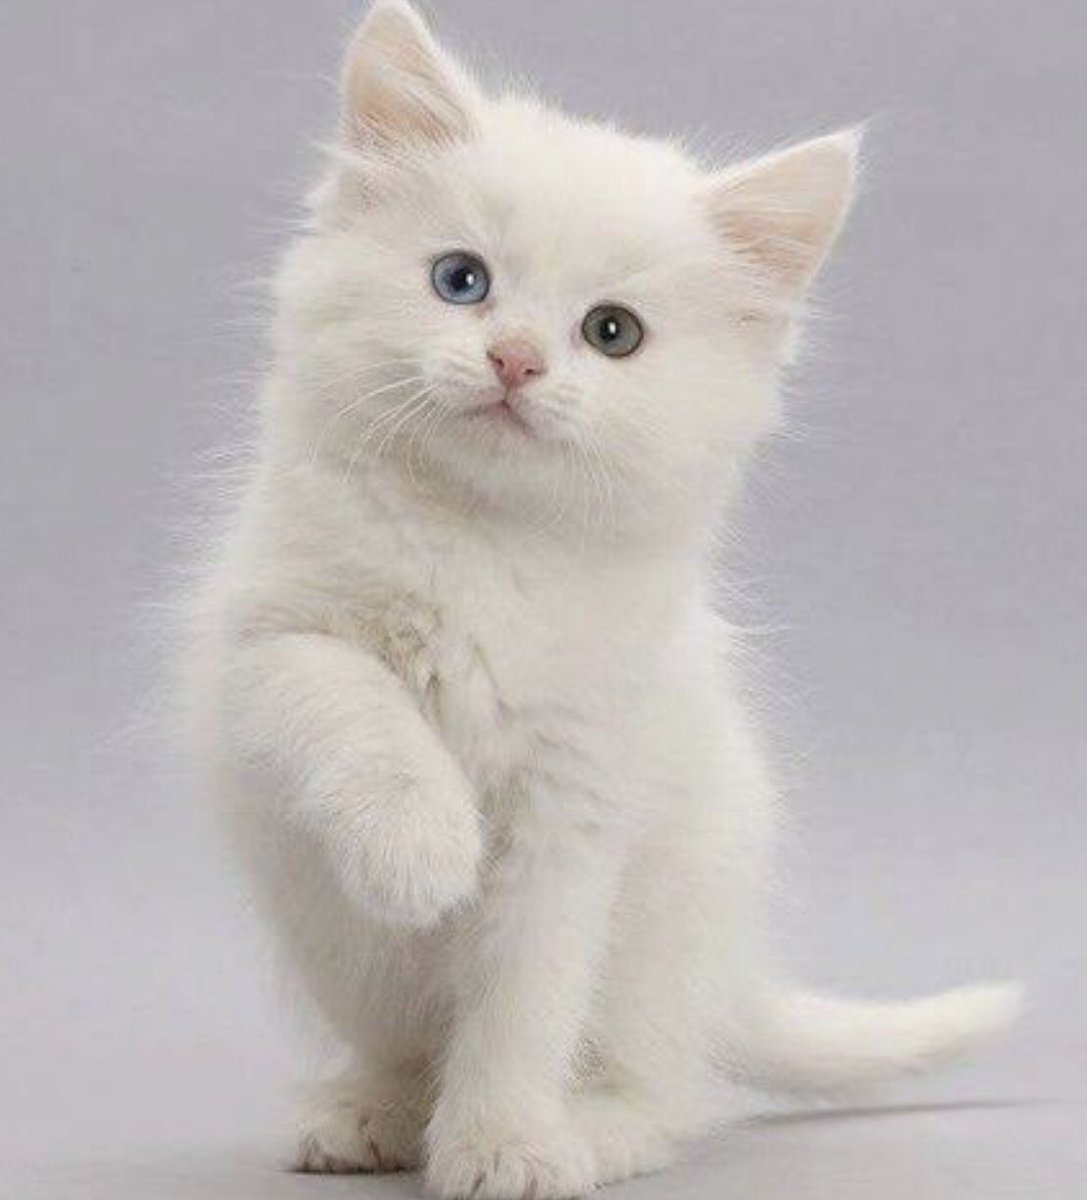 ФОТО: Маленький белый котенок 6